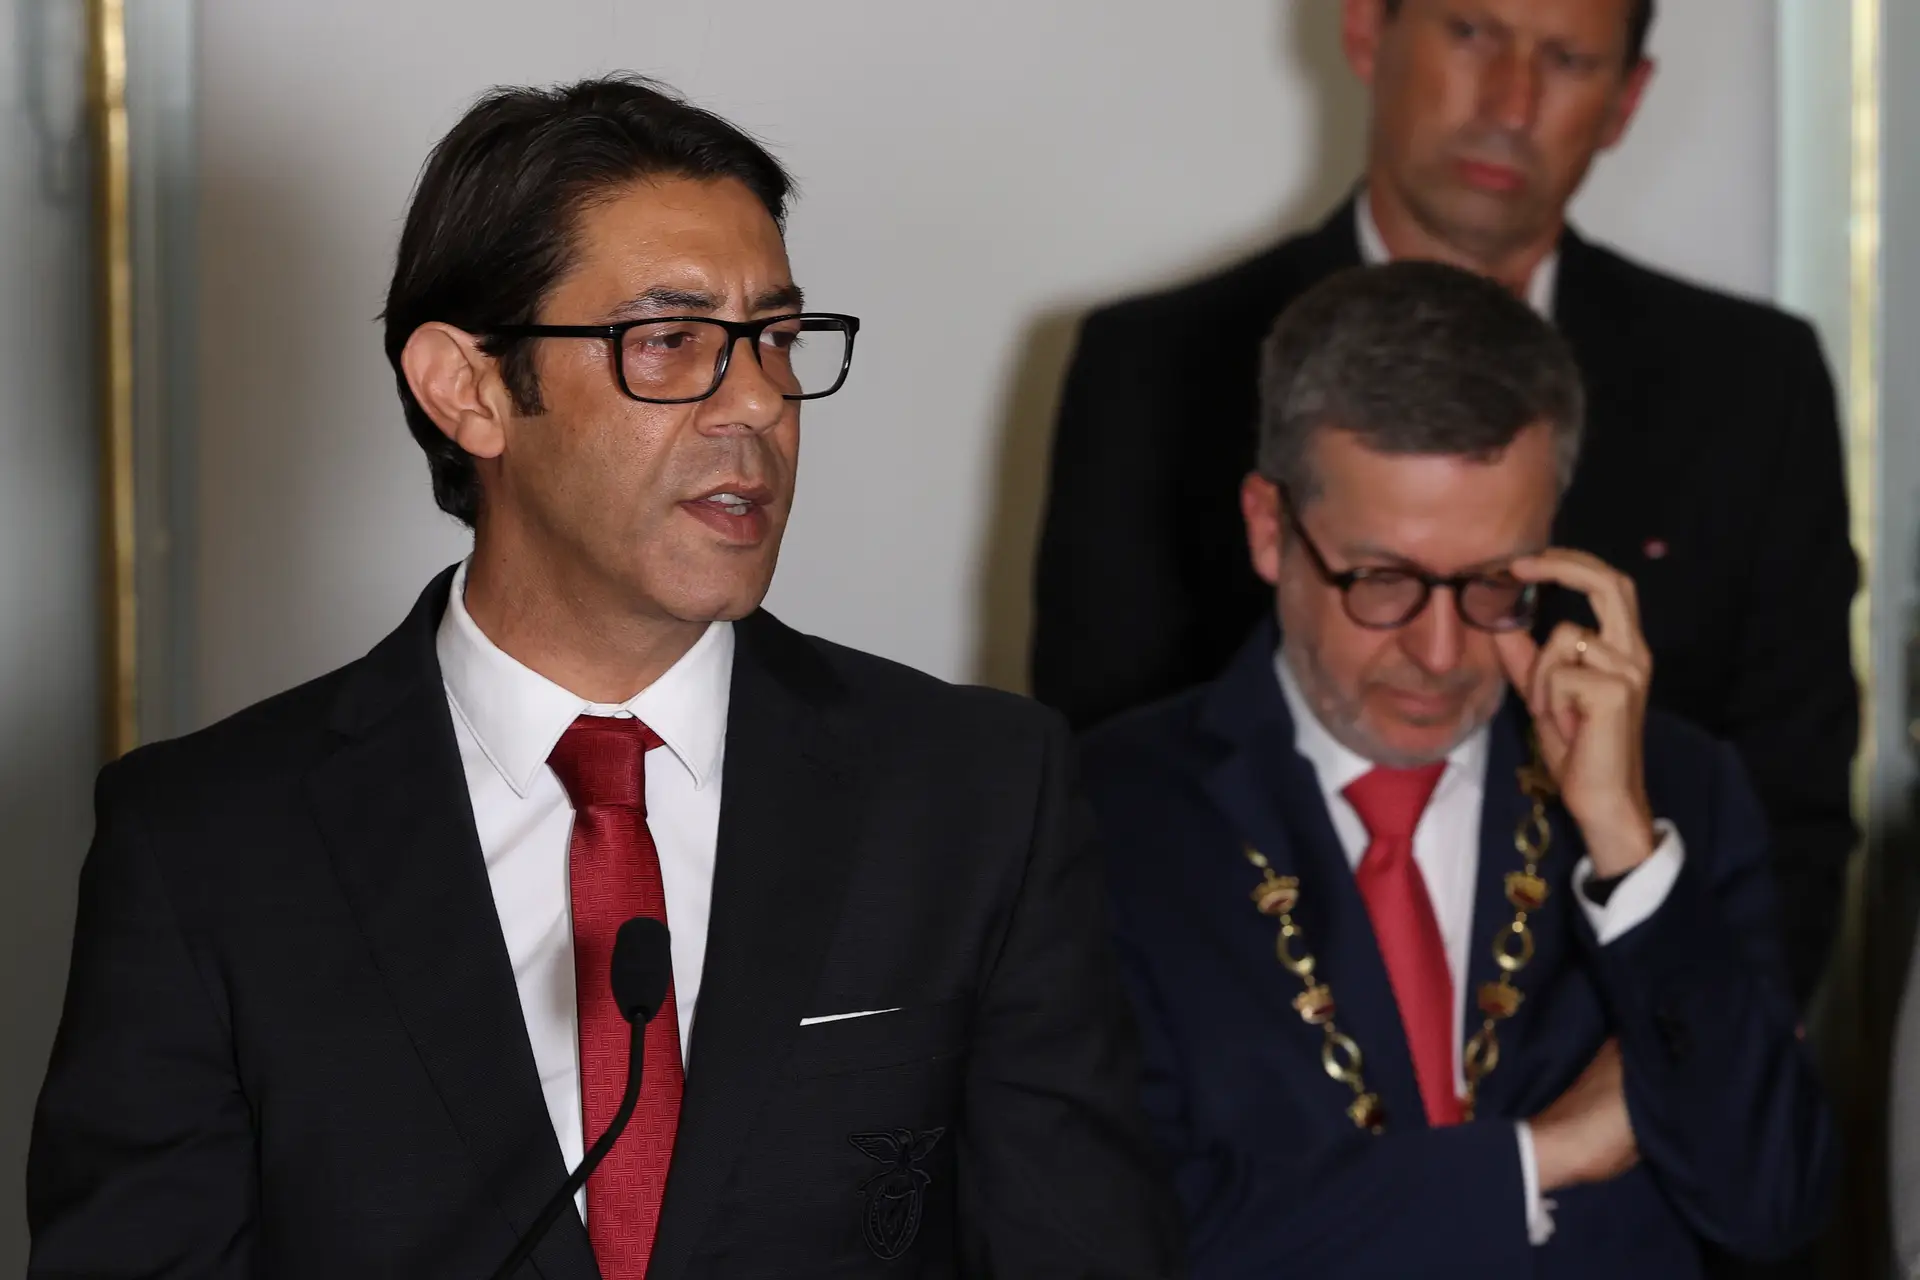 Benfica vai ser recebido esta segunda-feira na Câmara de Lisboa - SIC  Notícias